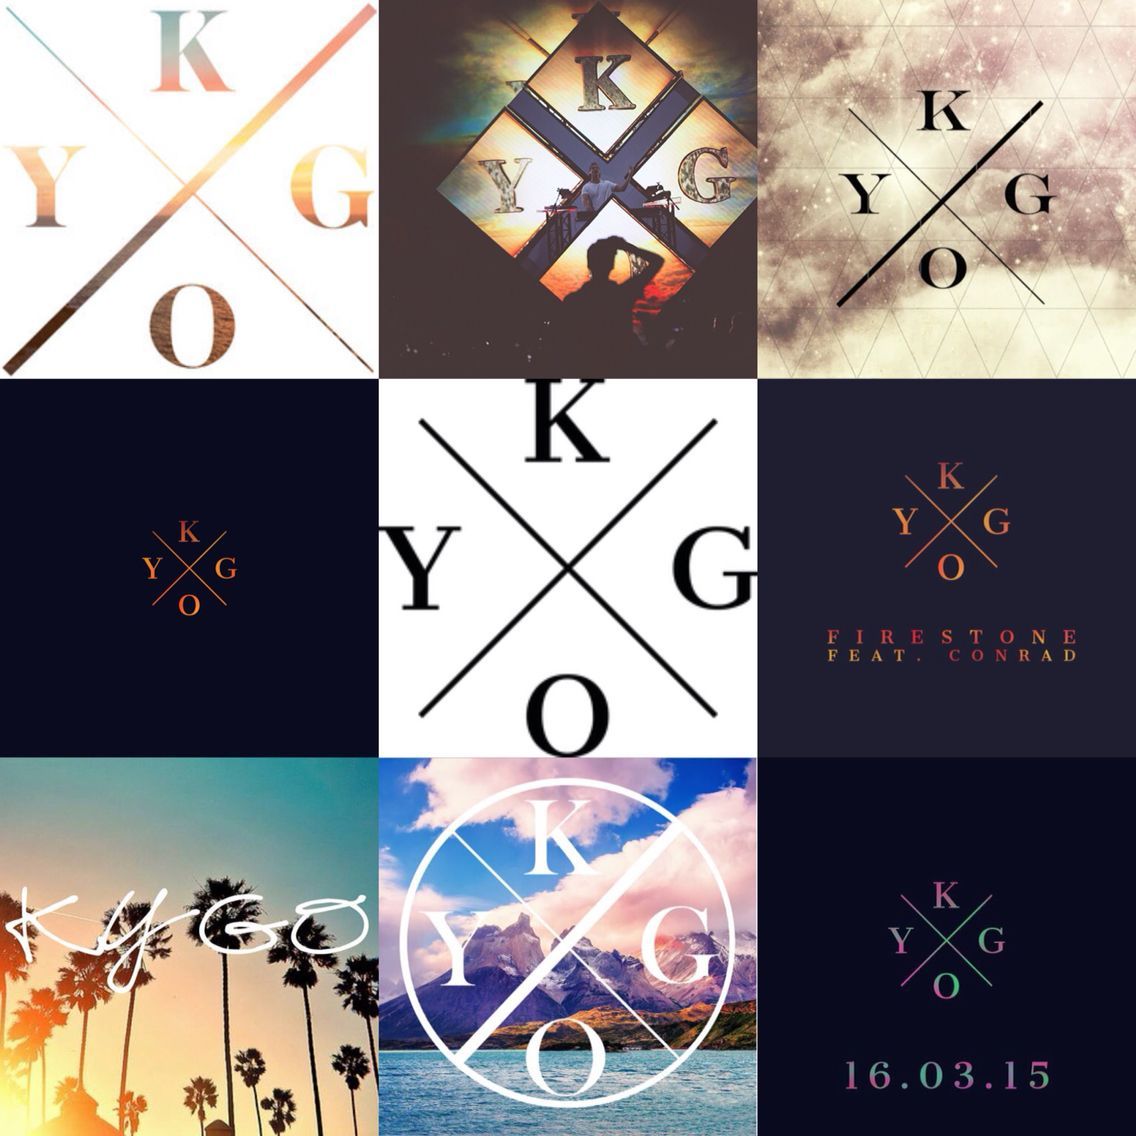 Kygo logo's. Fotos de musica electronica, Kygo wallpaper, Fondos de pantalla niñas